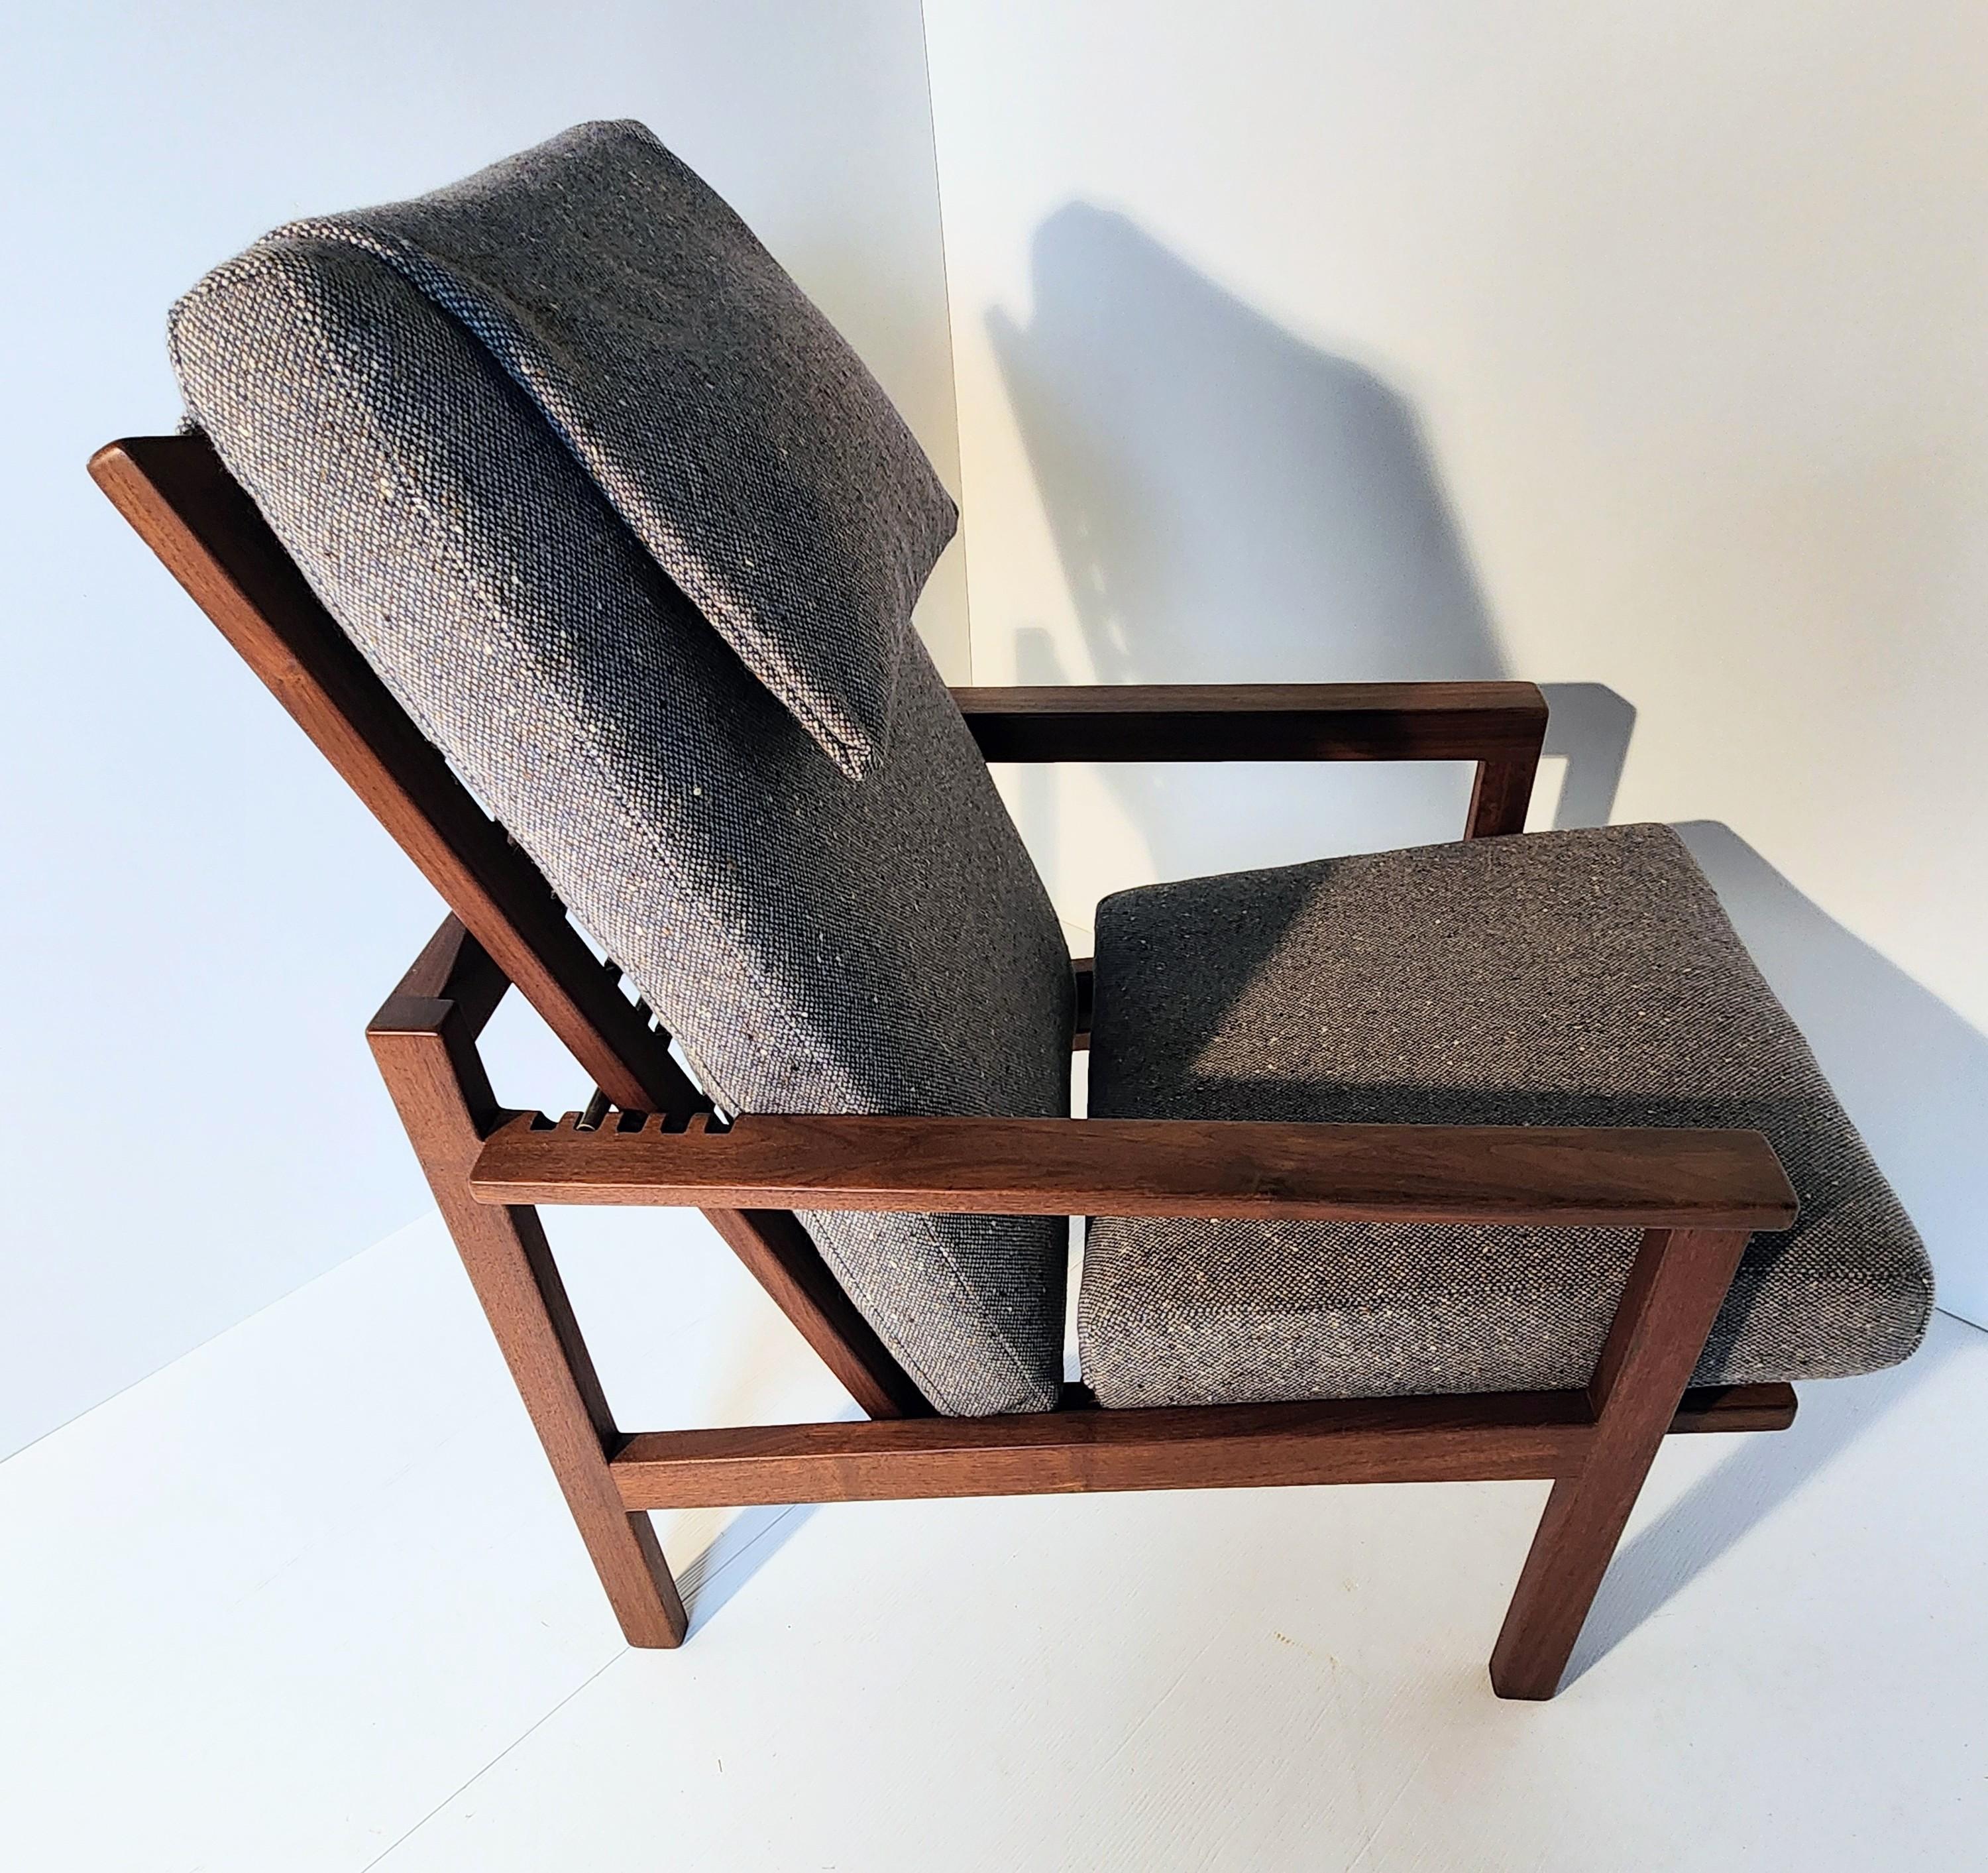 Ein verstellbarer Loungesessel von Arden Riddle, einem der führenden Möbelhandwerker in Ohio. Ein handgefertigtes Gestell aus schwarzem Nussbaum mit ummantelten Federstützen macht diesen Stuhl zu einem sehr ungewöhnlichen und bequemen Stuhl. Im